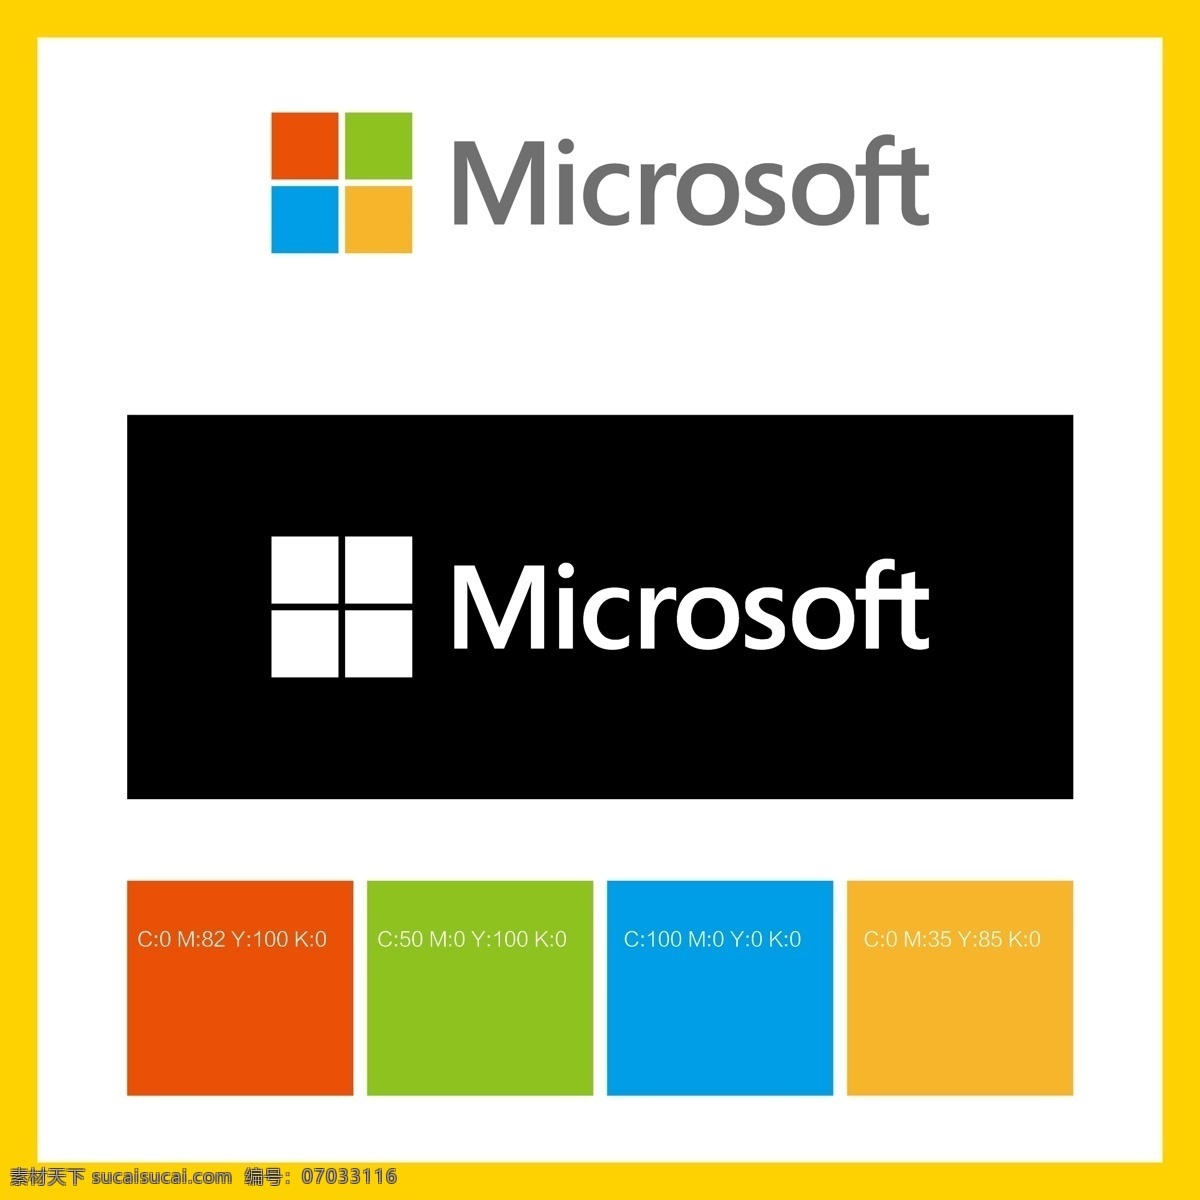 微软集团 微软 win10 win7 操作系统 桌面系统 cpu 处理器 多核 内存 闪存 显卡 ssd 机械硬盘 移动硬盘 电子产品 数码产品 logo 标志 矢量 vi logo设计